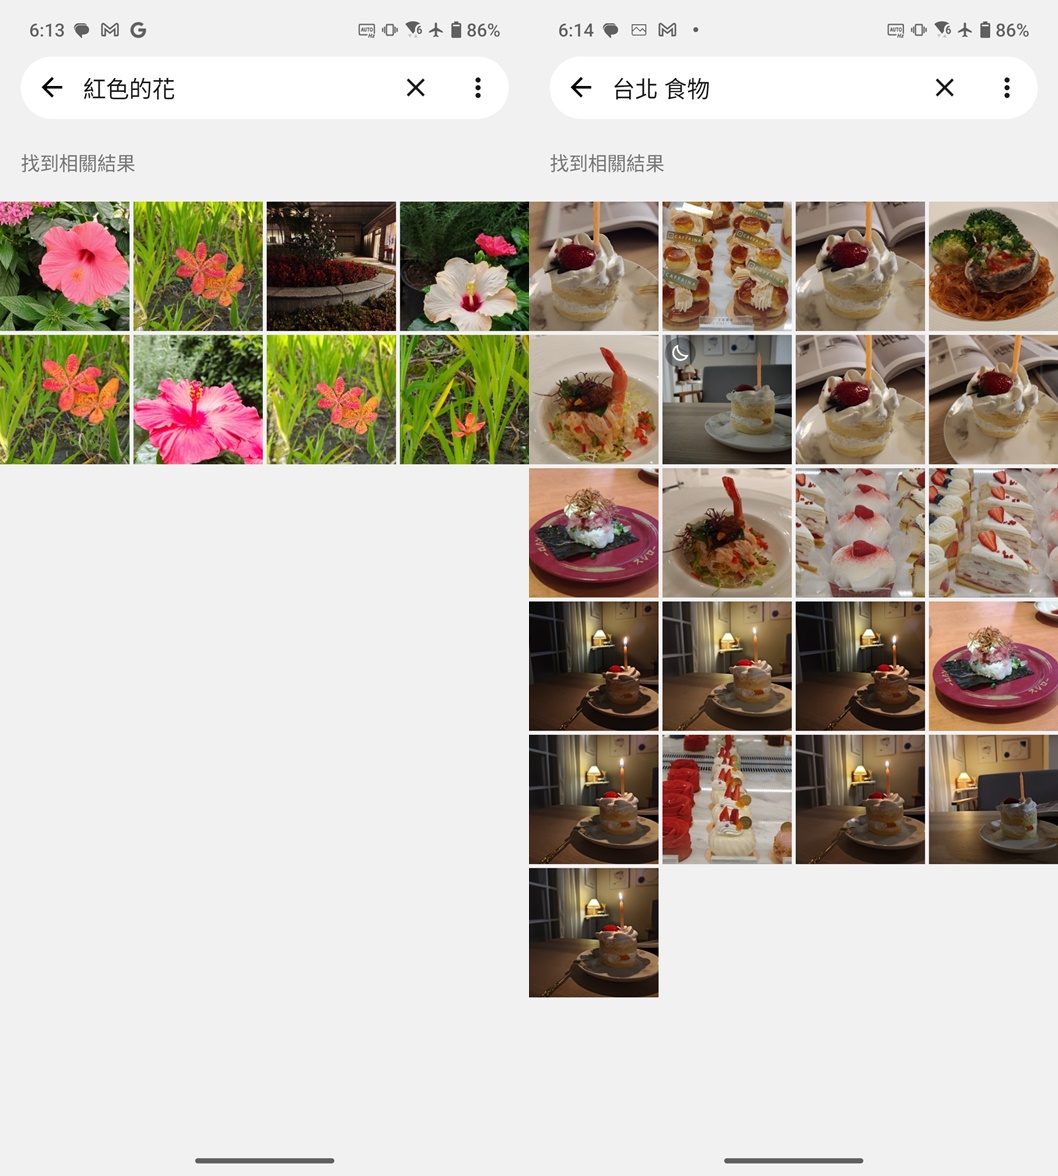 舉例來說用「紅色的花」和「台北食物」兩個關鍵字在相簿中搜尋，就可以快速找到過去曾經拍過相關主主題的照片。